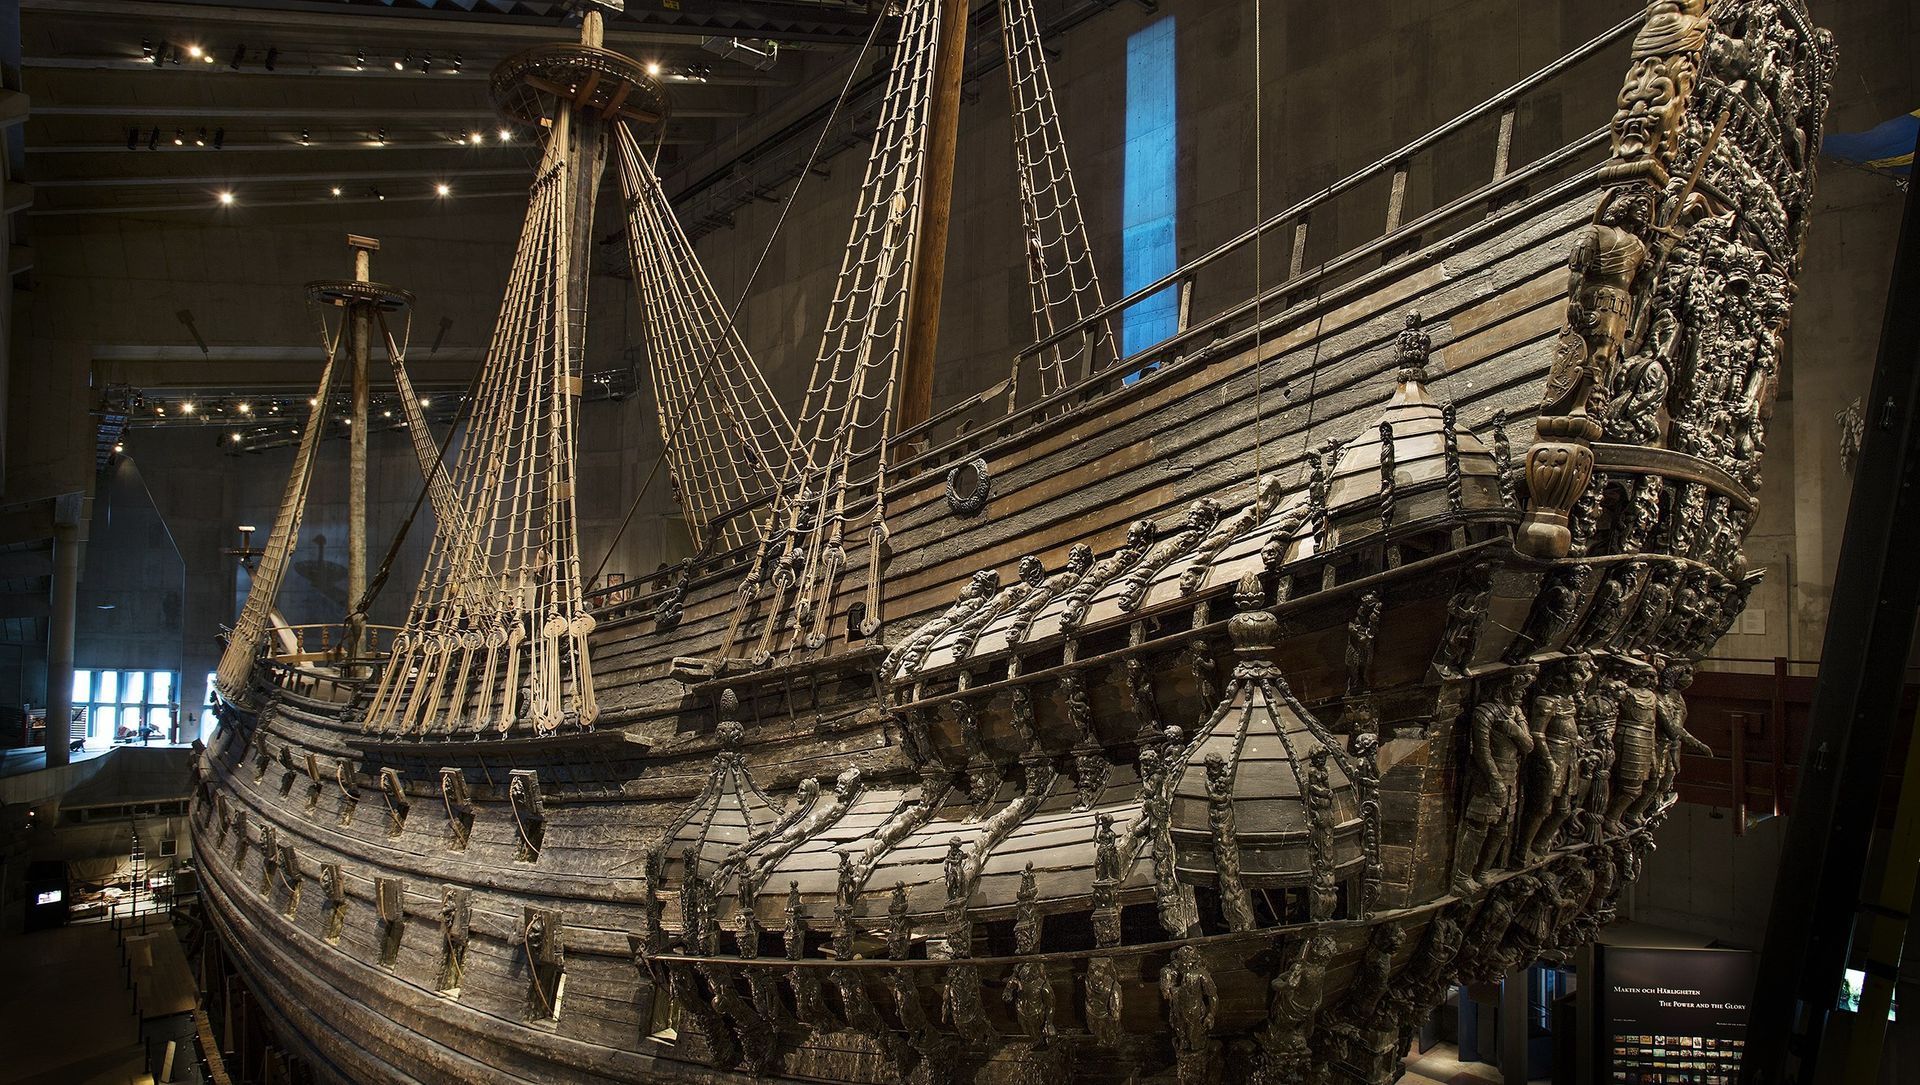 un grand navire est exposé dans un musée.